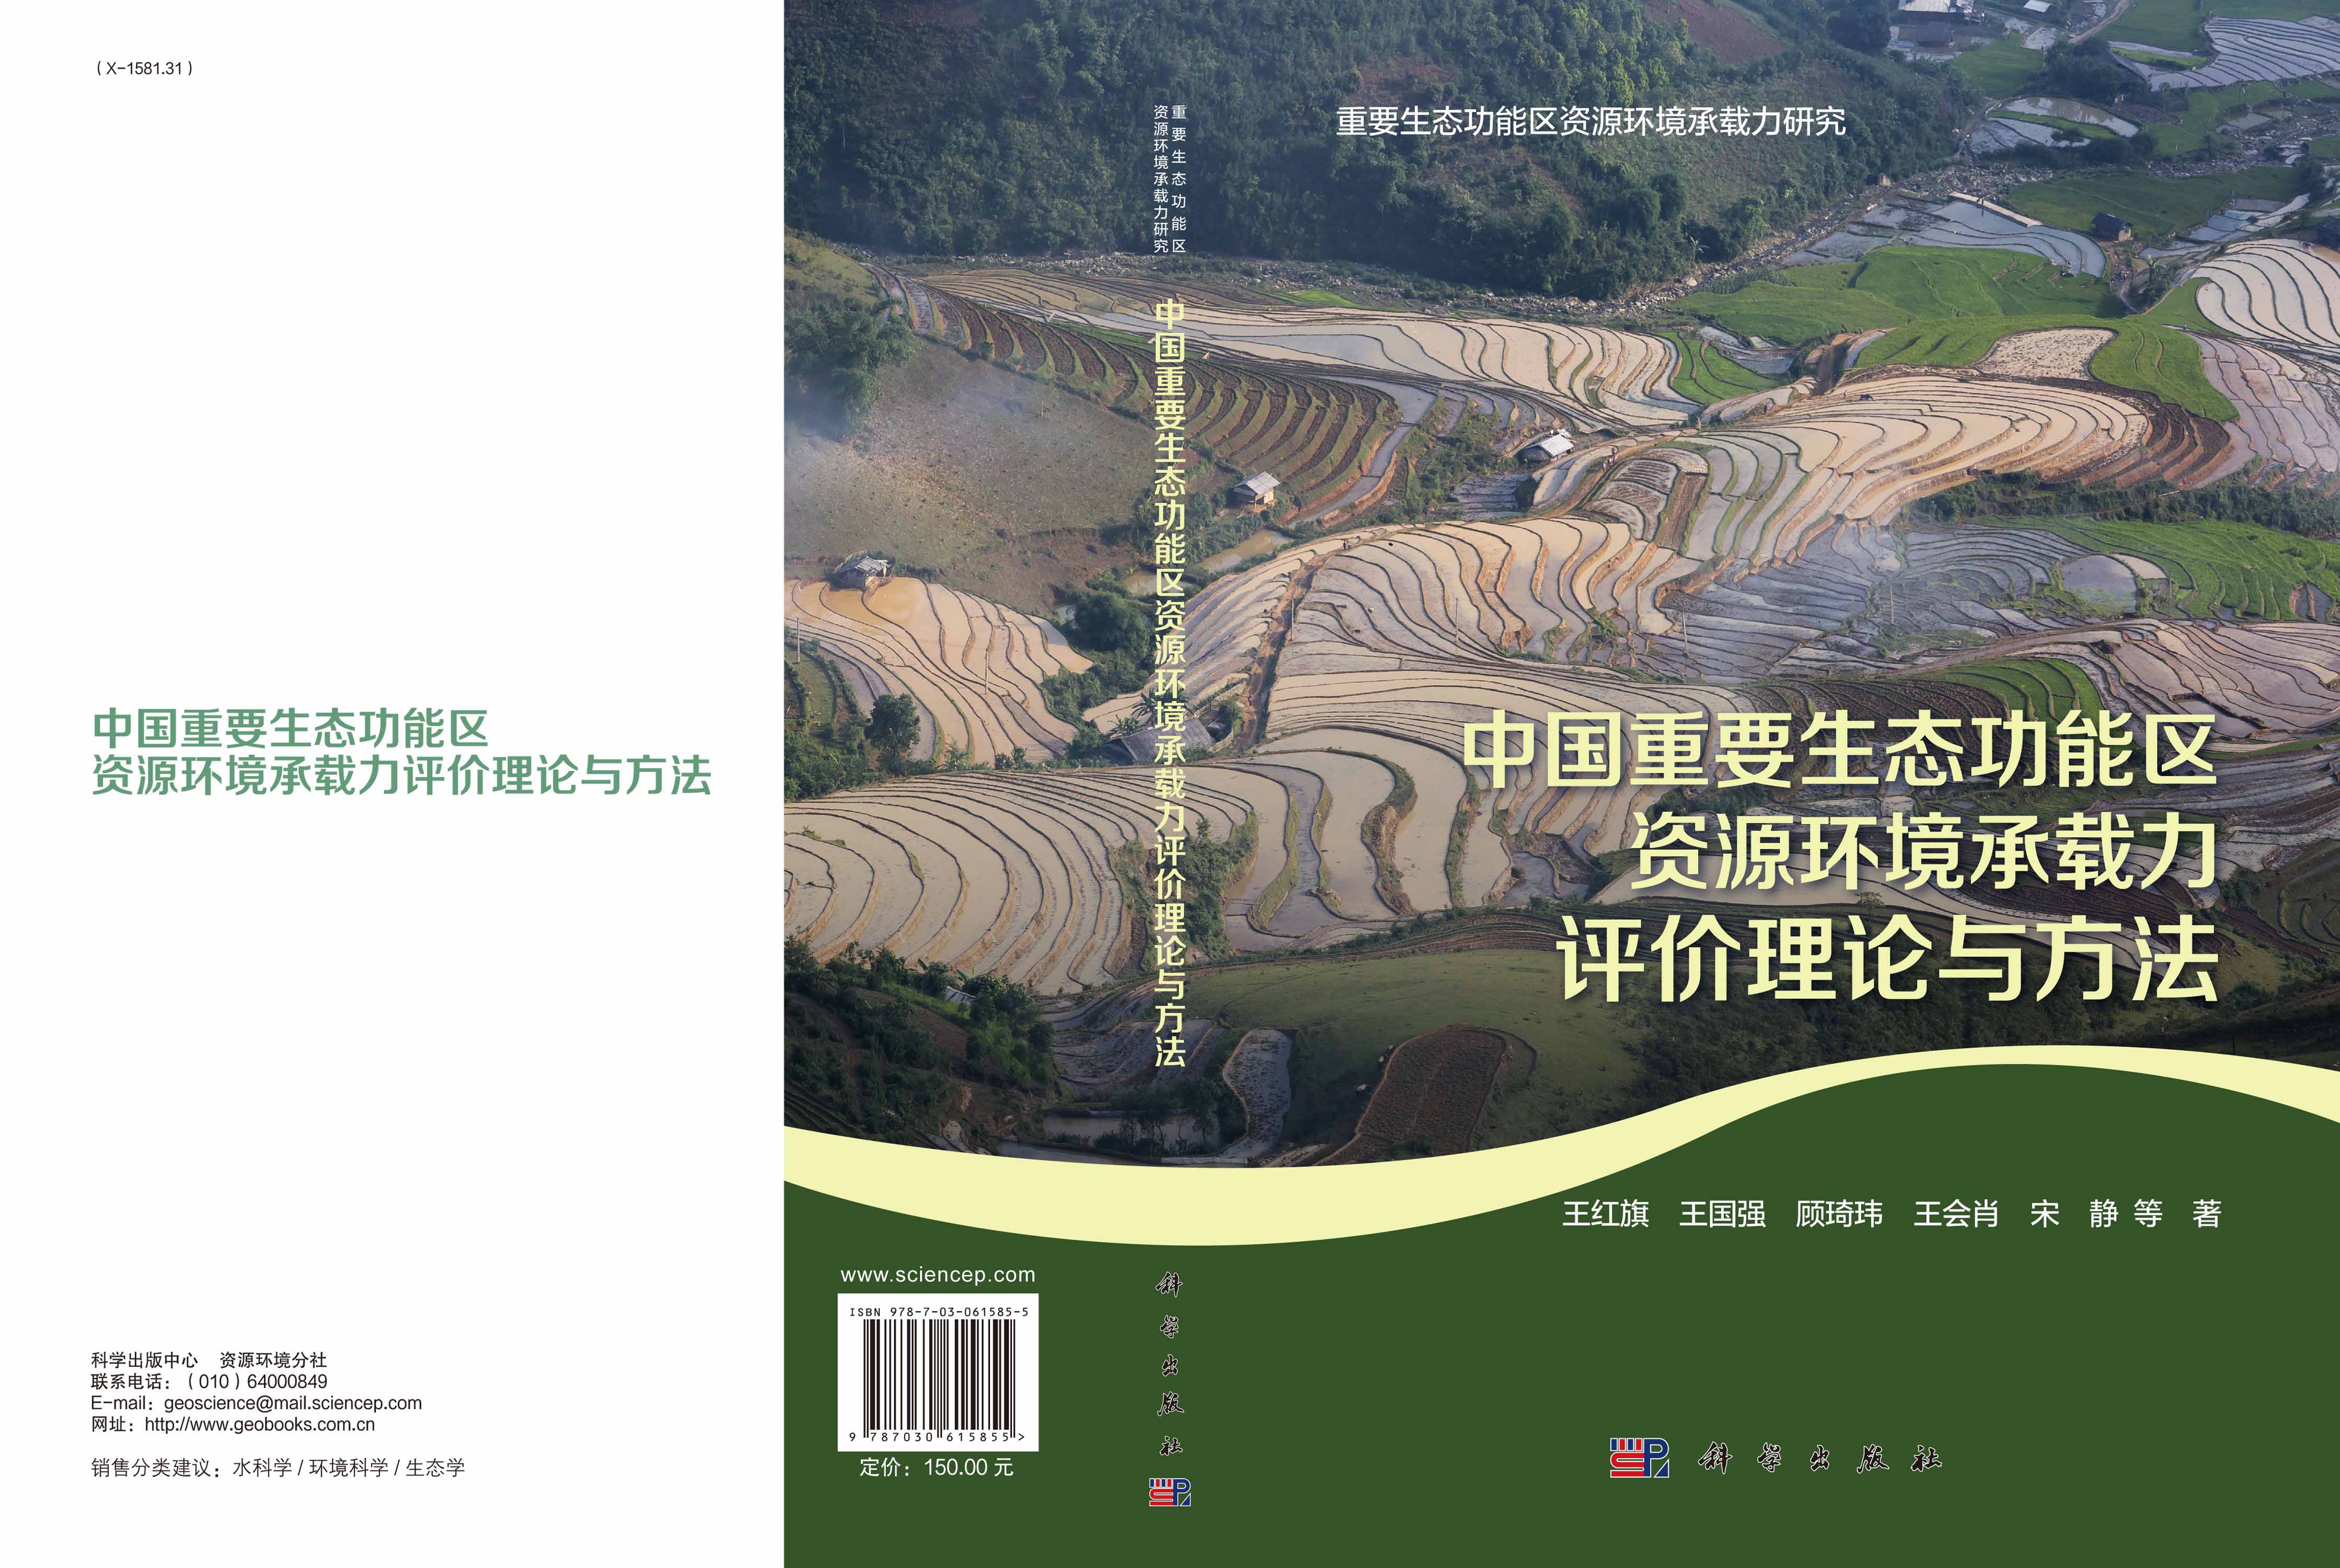 中国重要生态功能区资源环境承载力评价理论与方法